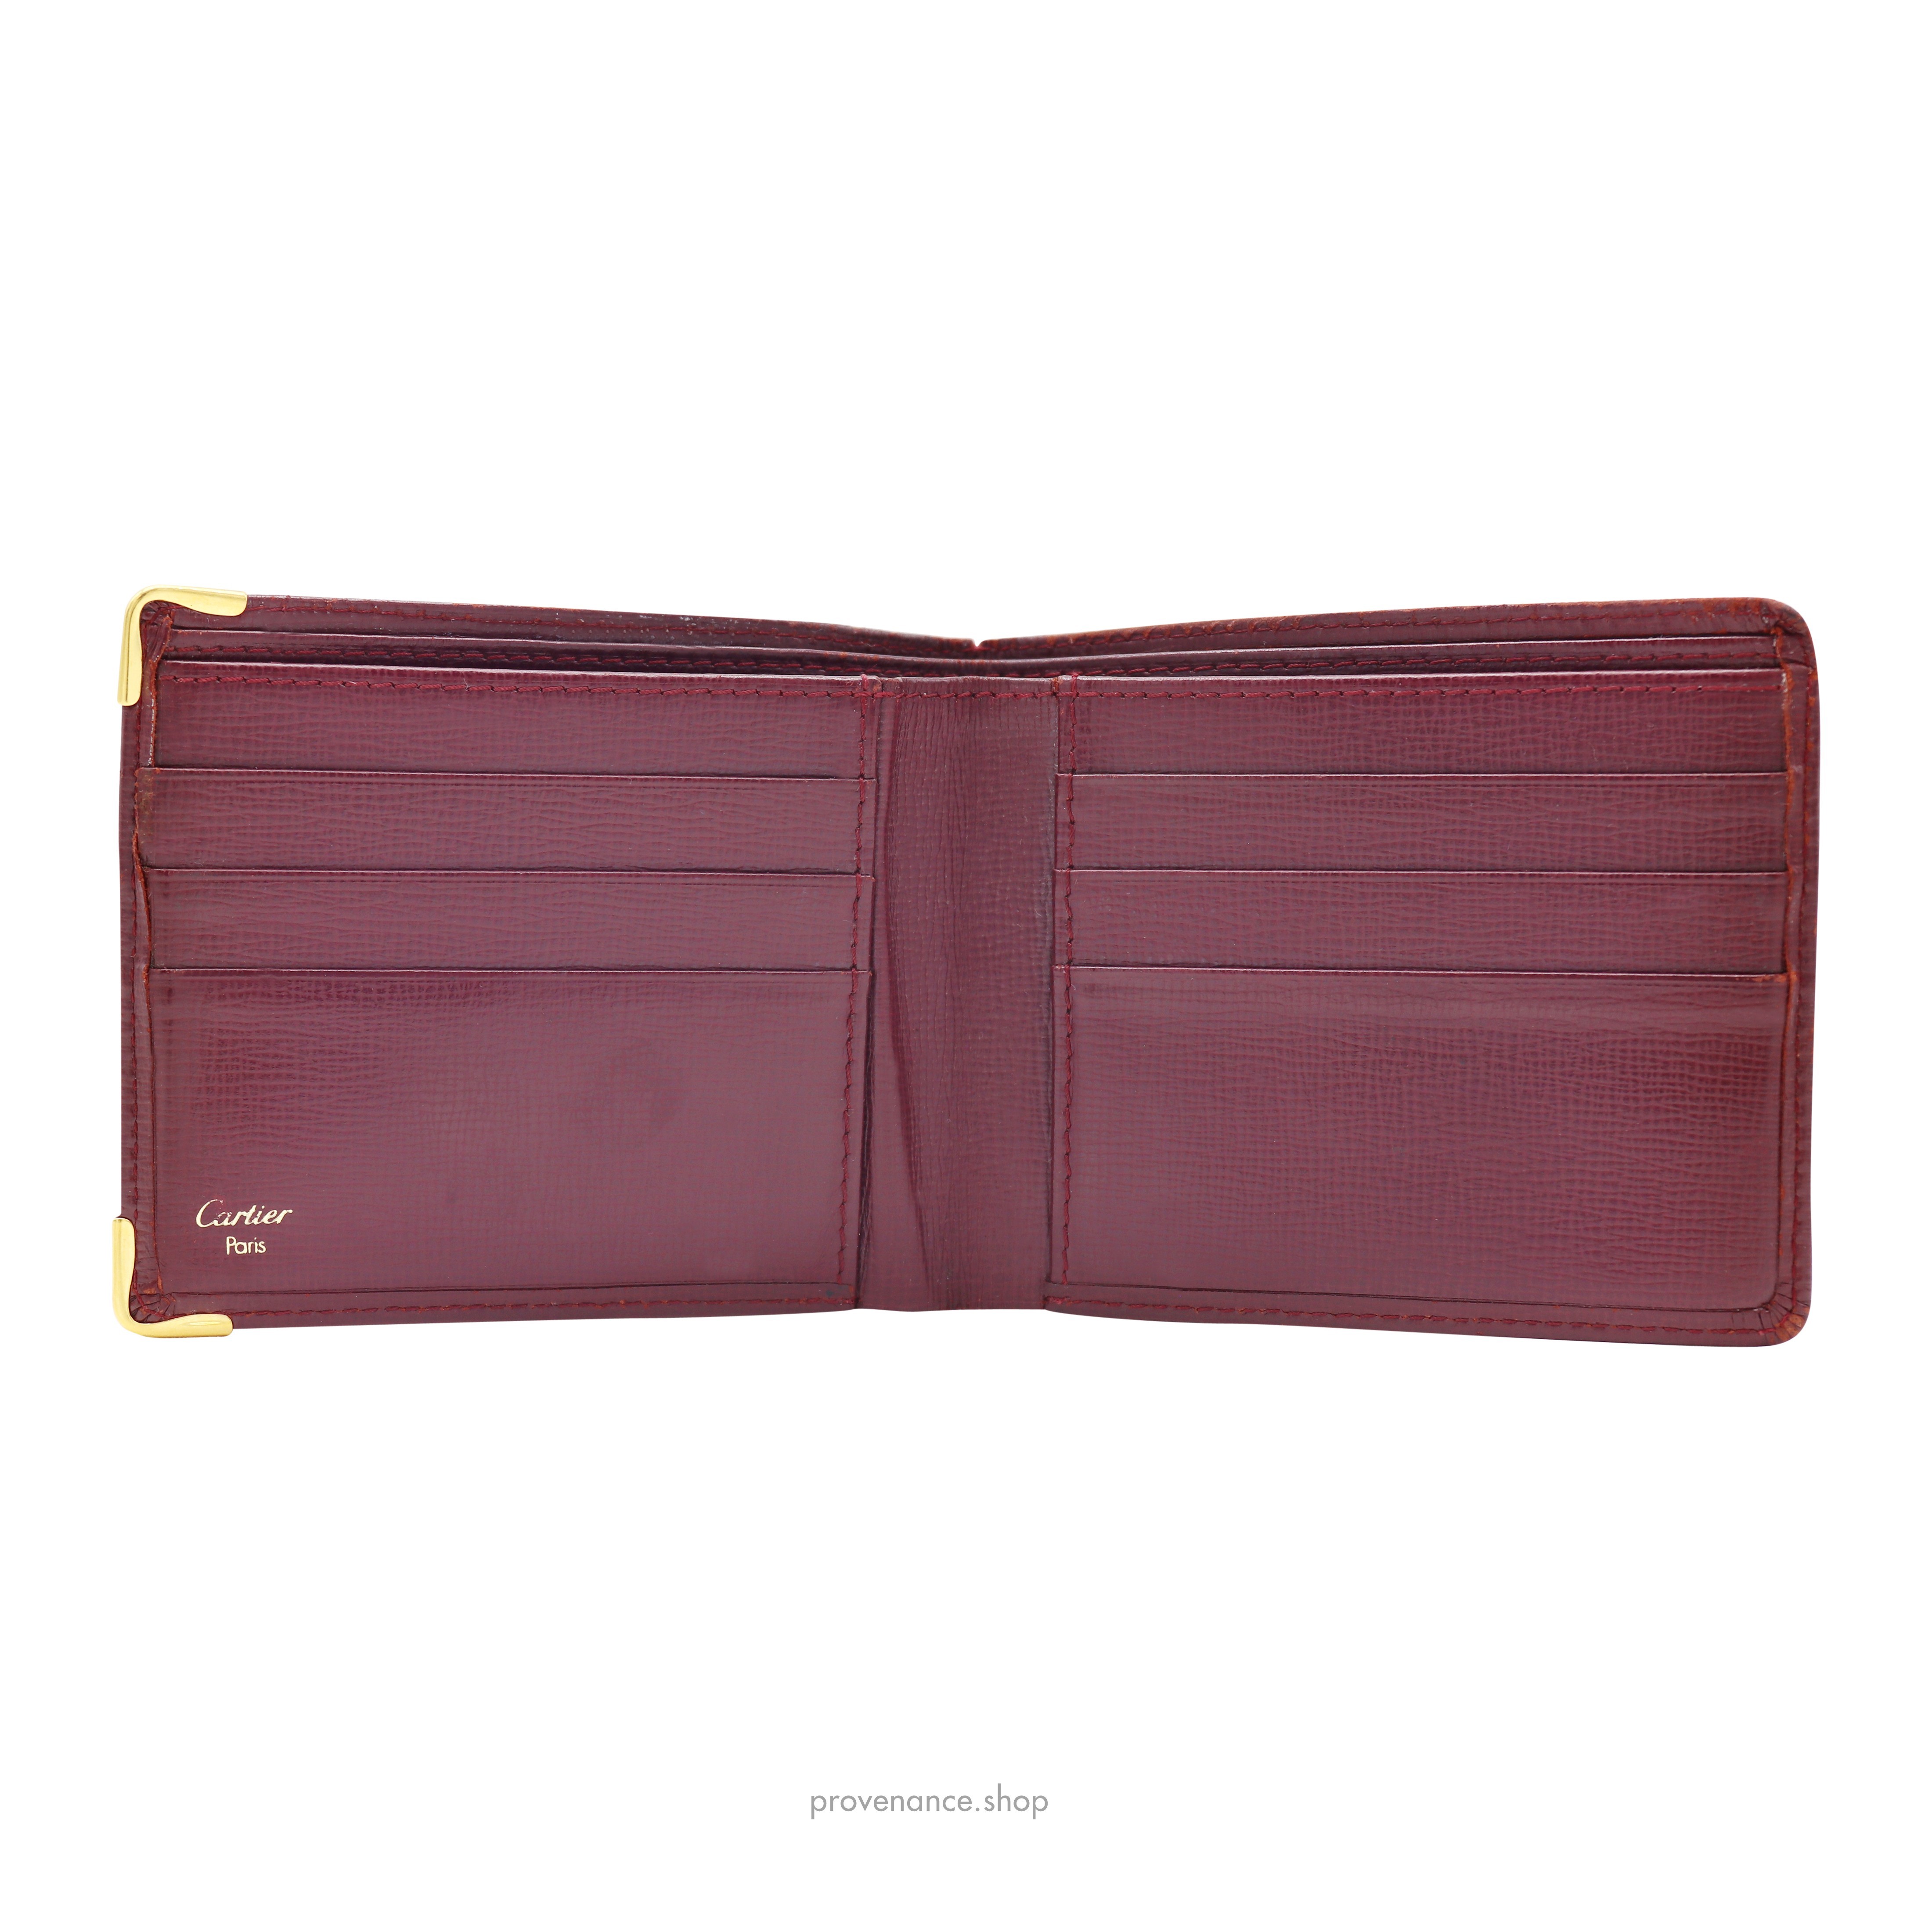 Cartier 6CC Bifold Wallet - Burgundy Calfskin Leather - 4